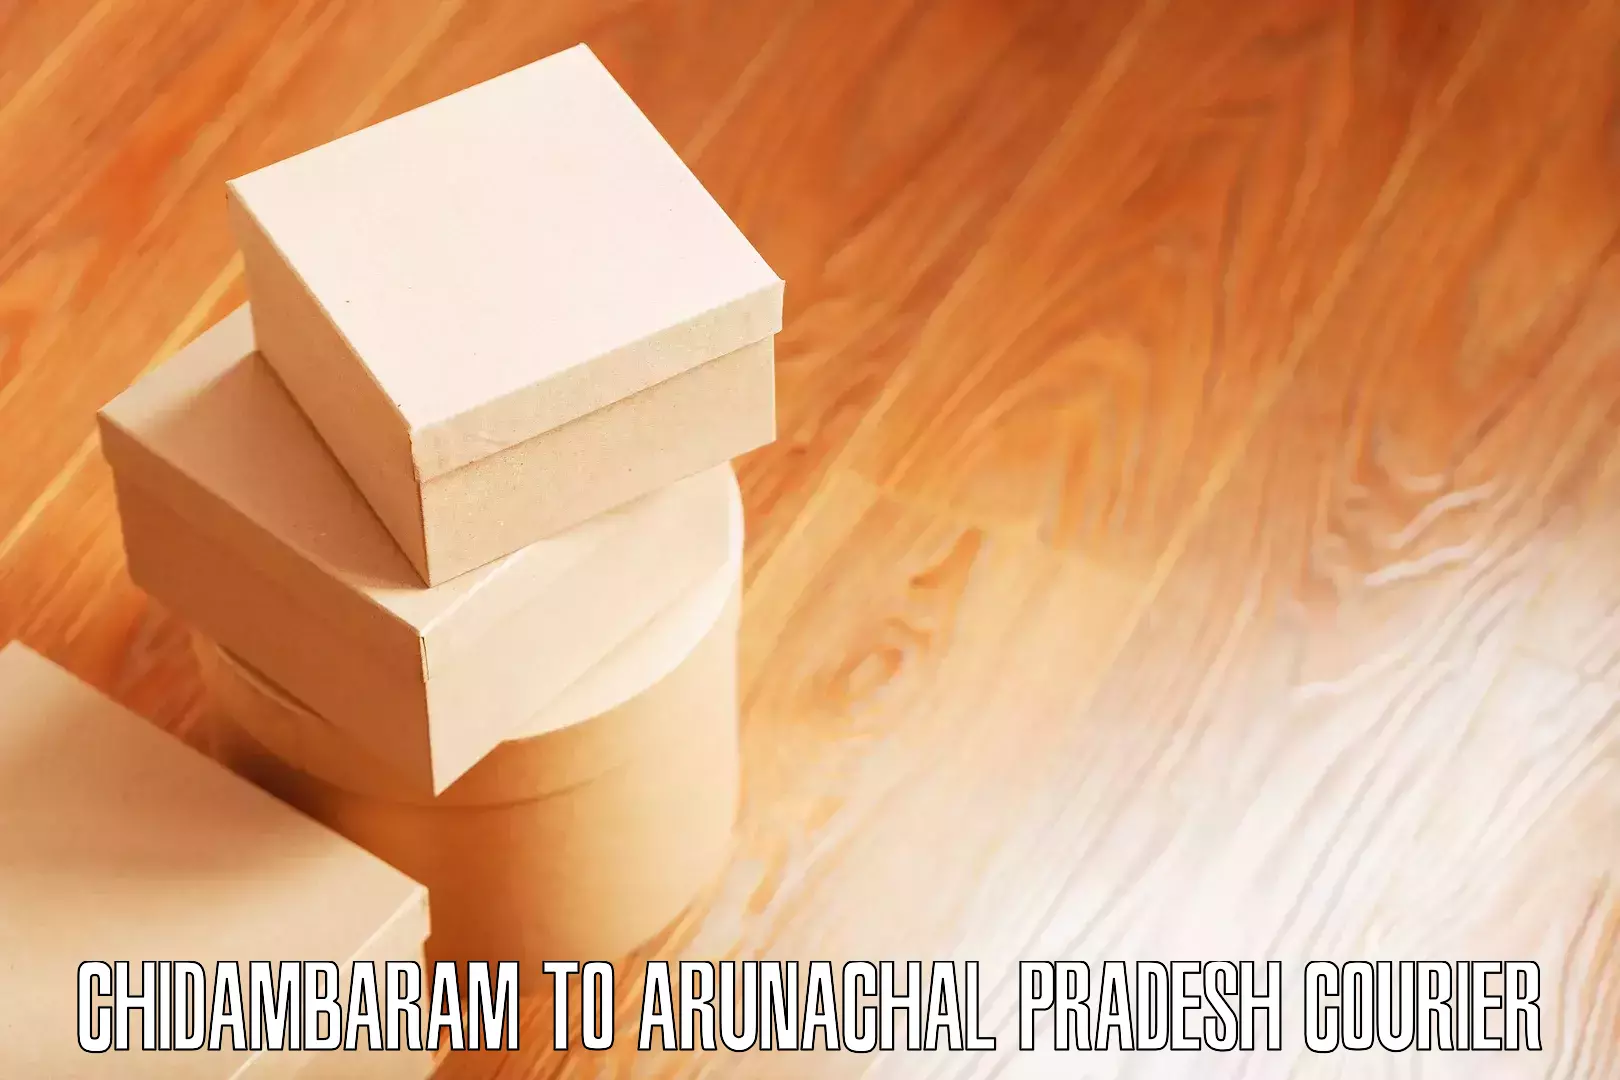 Cost-effective moving options Chidambaram to Arunachal Pradesh